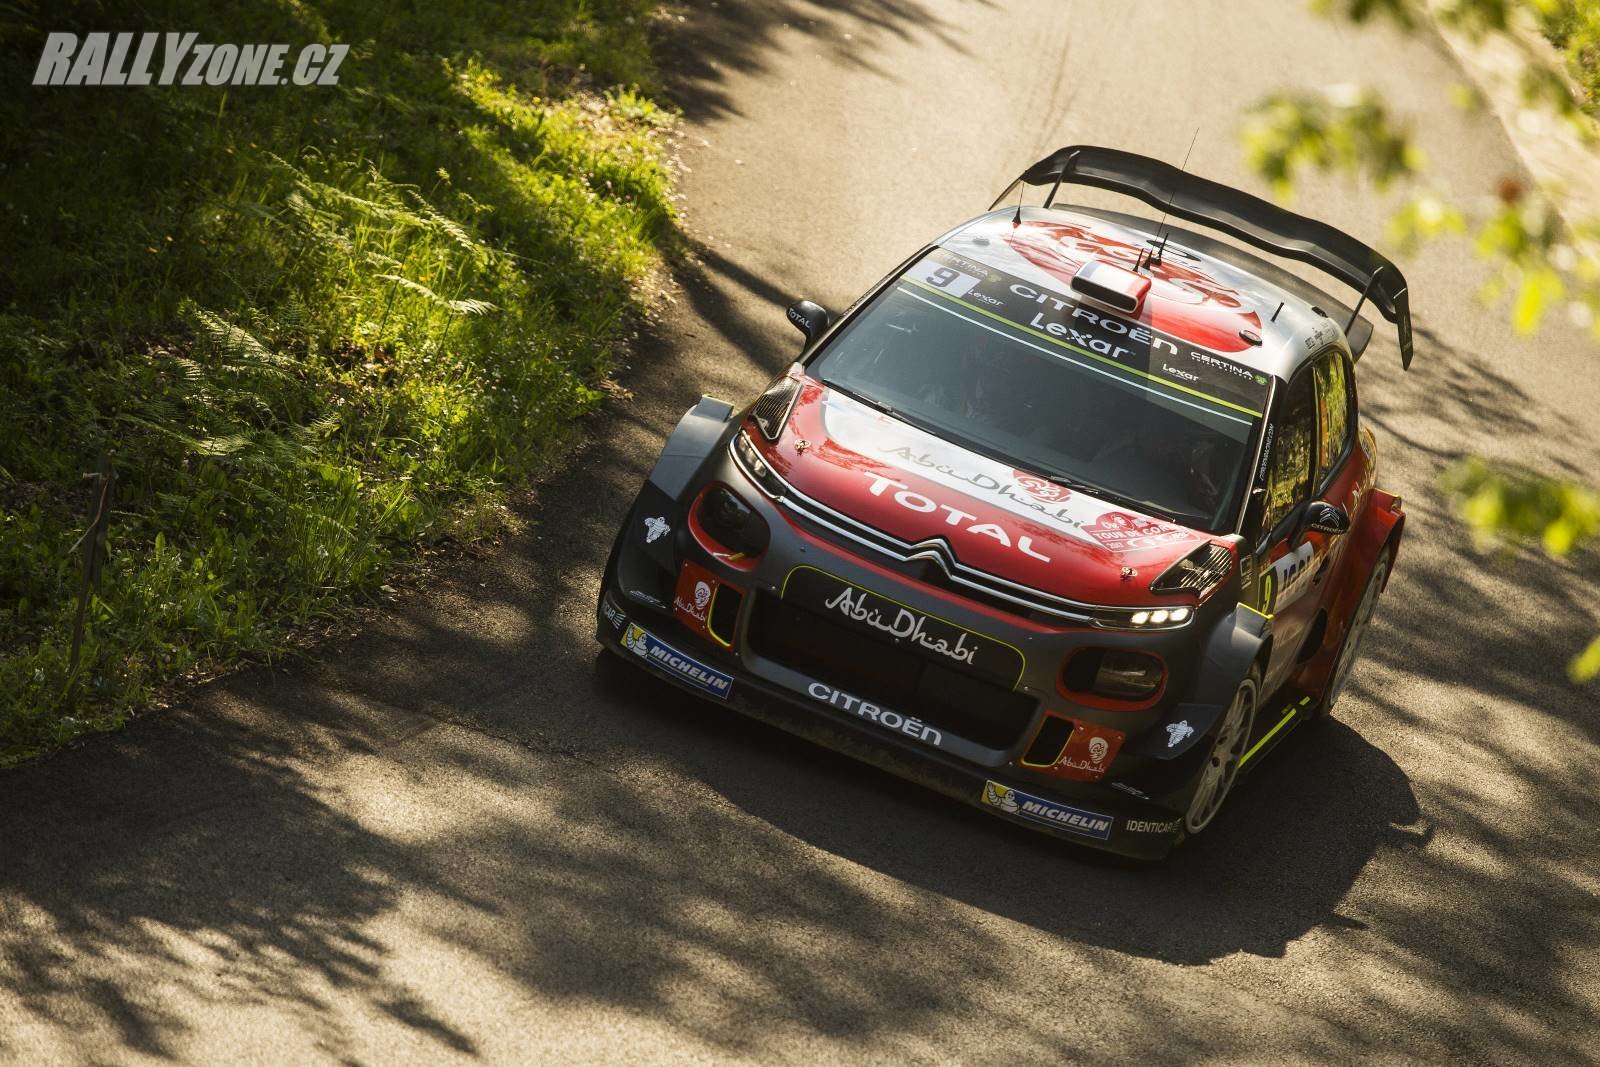 Citroën C3 WRC potřeboval na asfaltu po Monte Carlu vylepšit